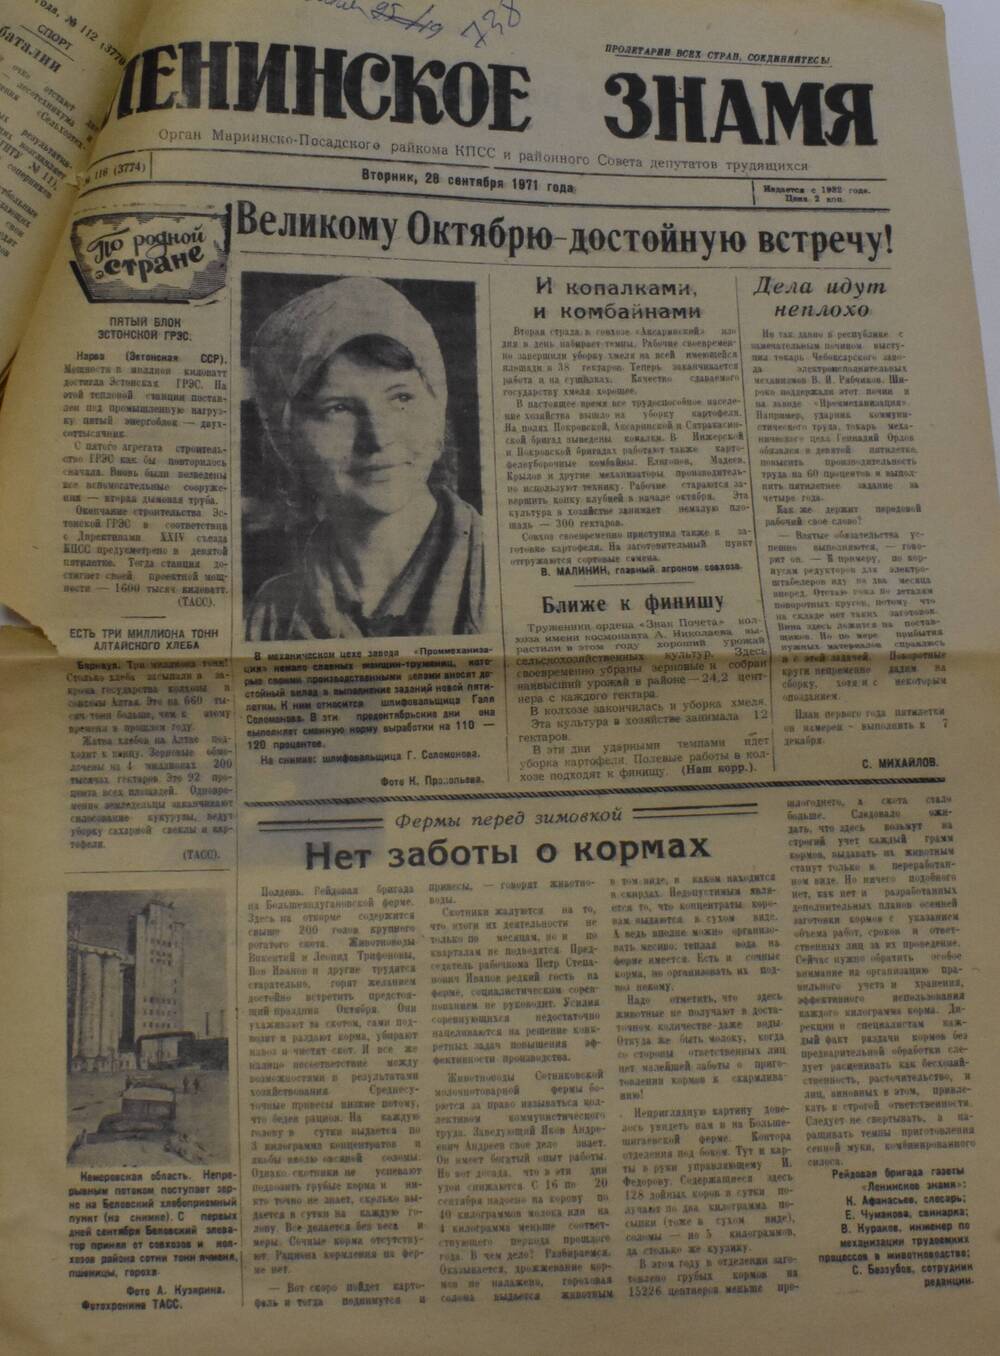 Газета Ленинское знамя от 28 сентября 1971